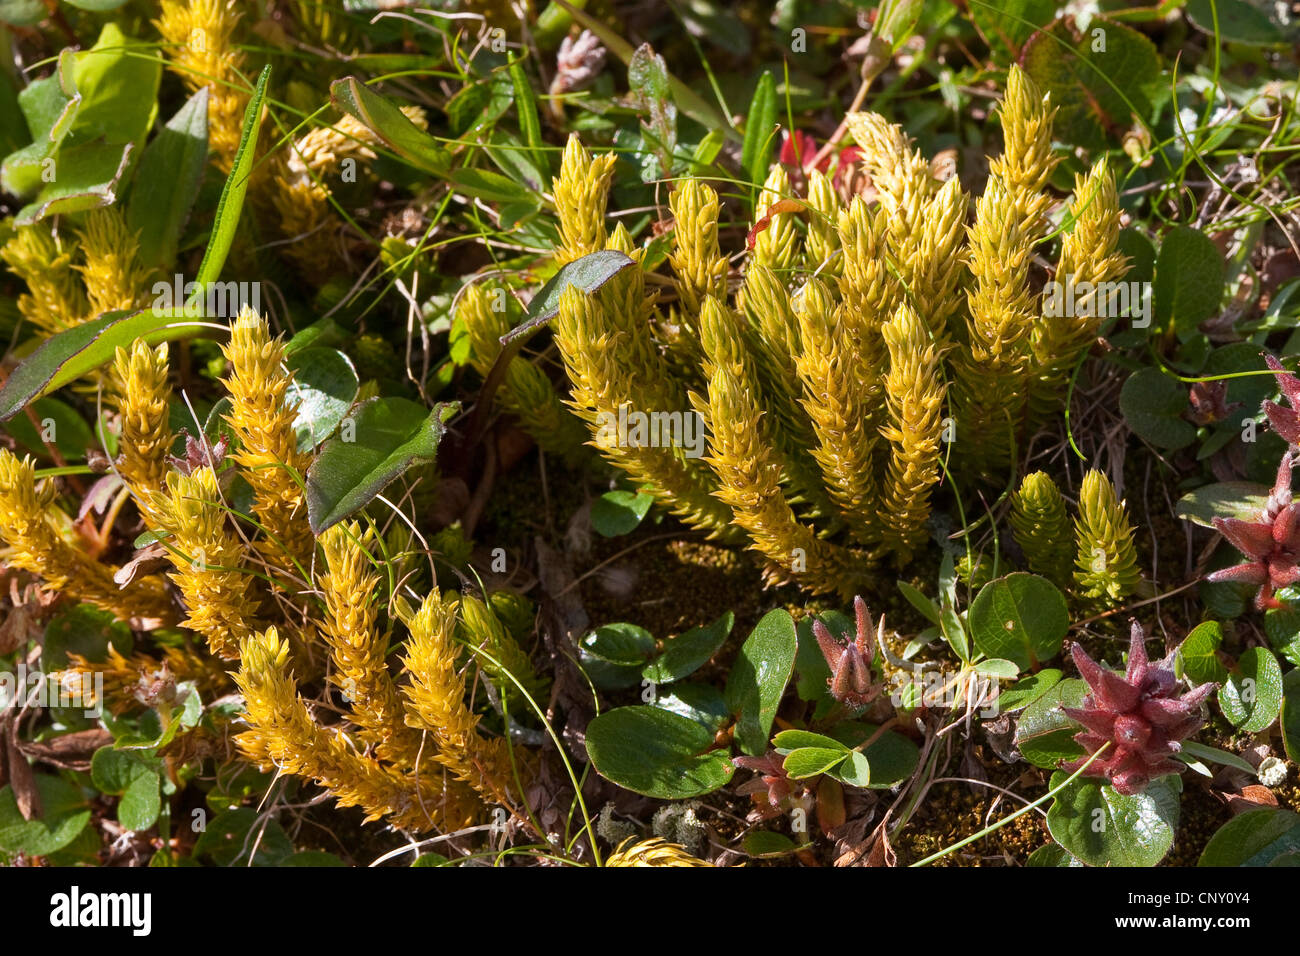 fir clubmoss, mountain clubmoss, fir-clubmoss (Huperzia selago, Lycopodium selago), Germany Stock Photo